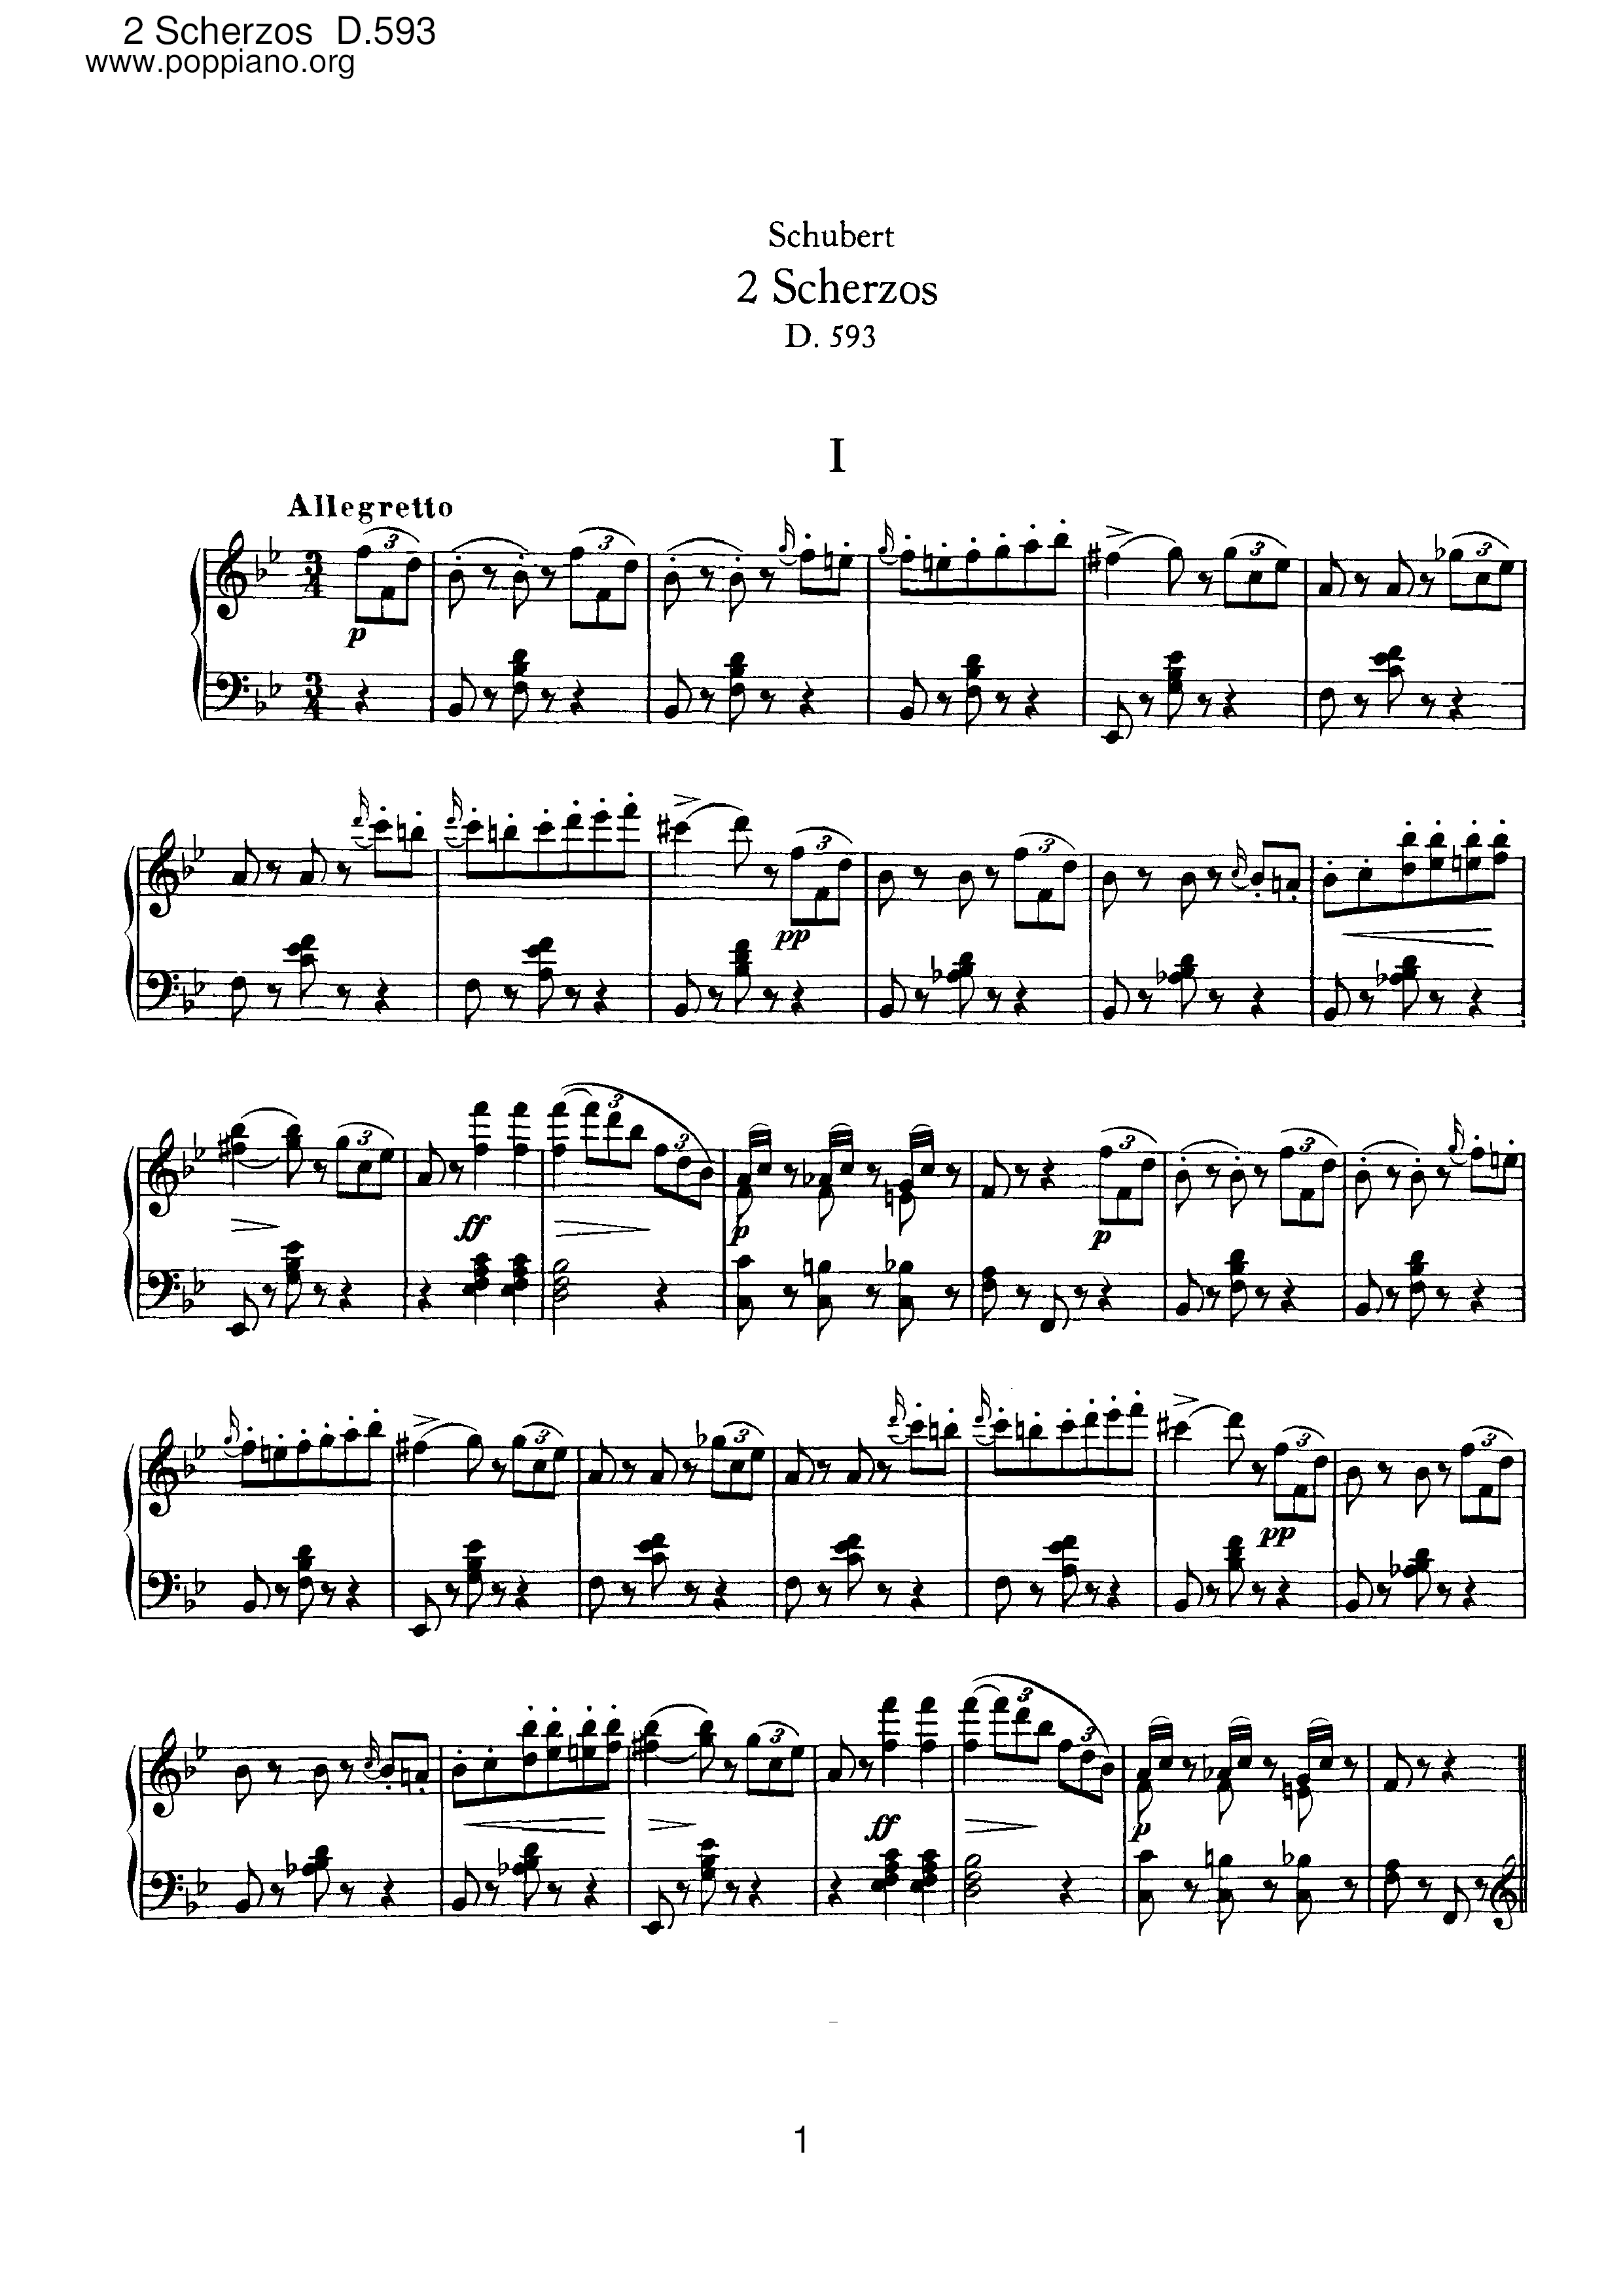 2 Scherzos, D.593 Score